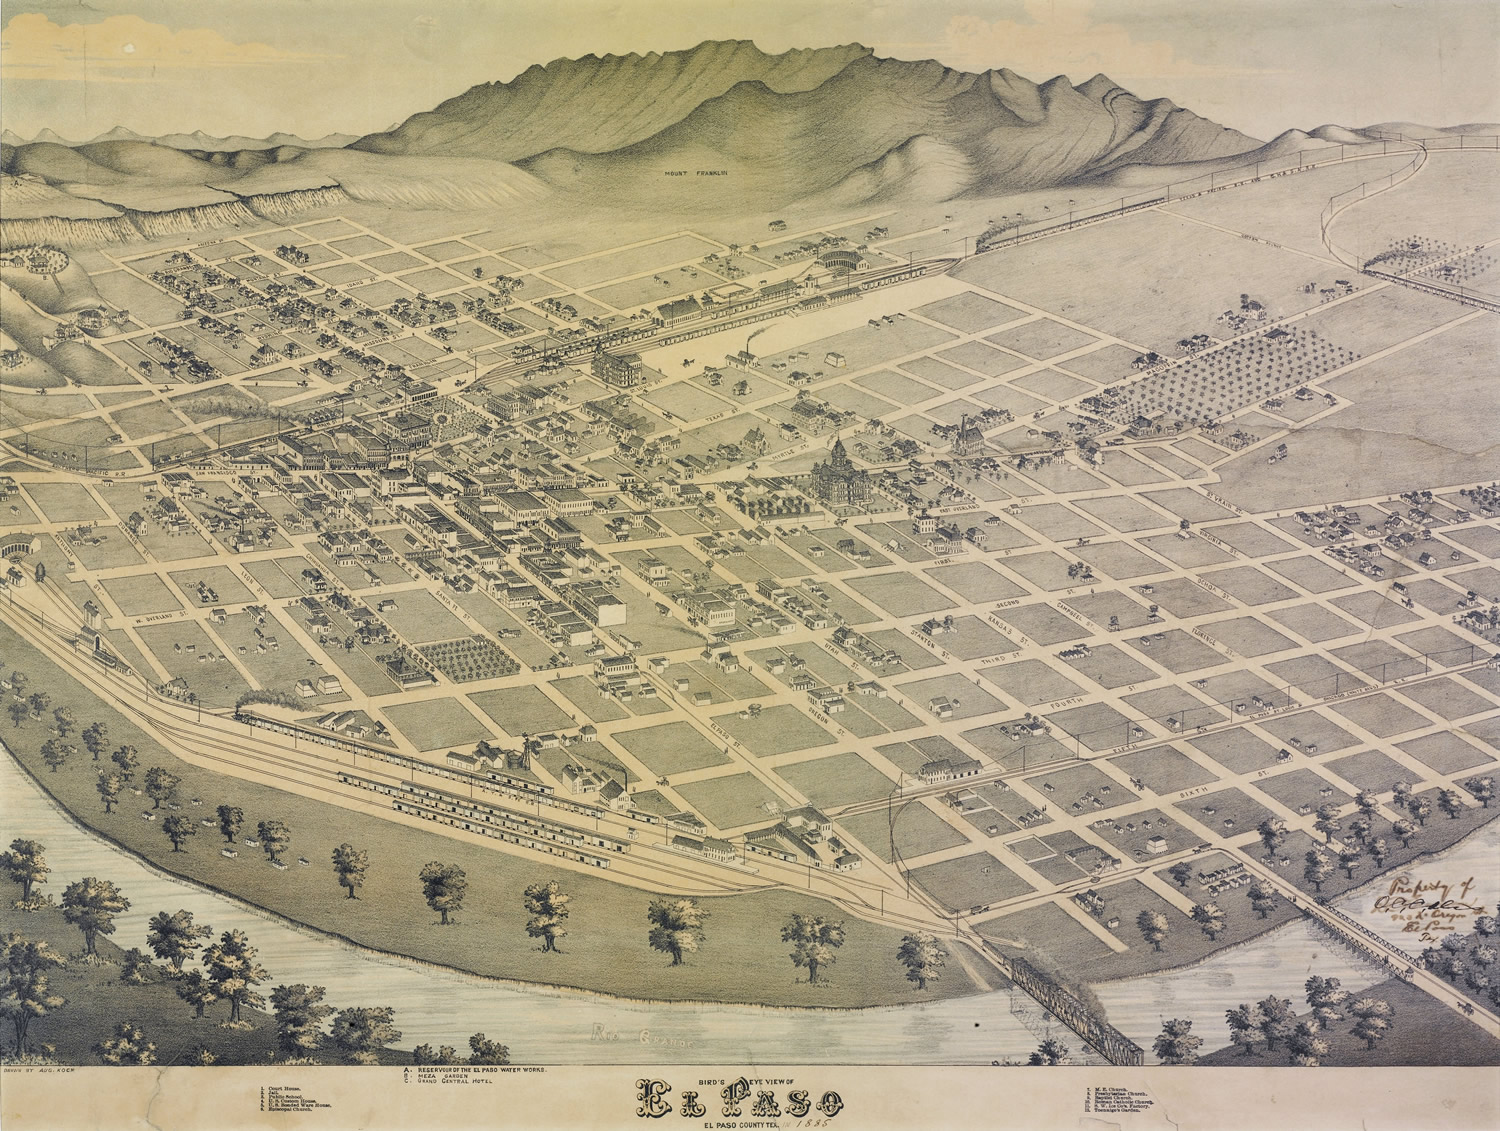 View of El Paso, 1886